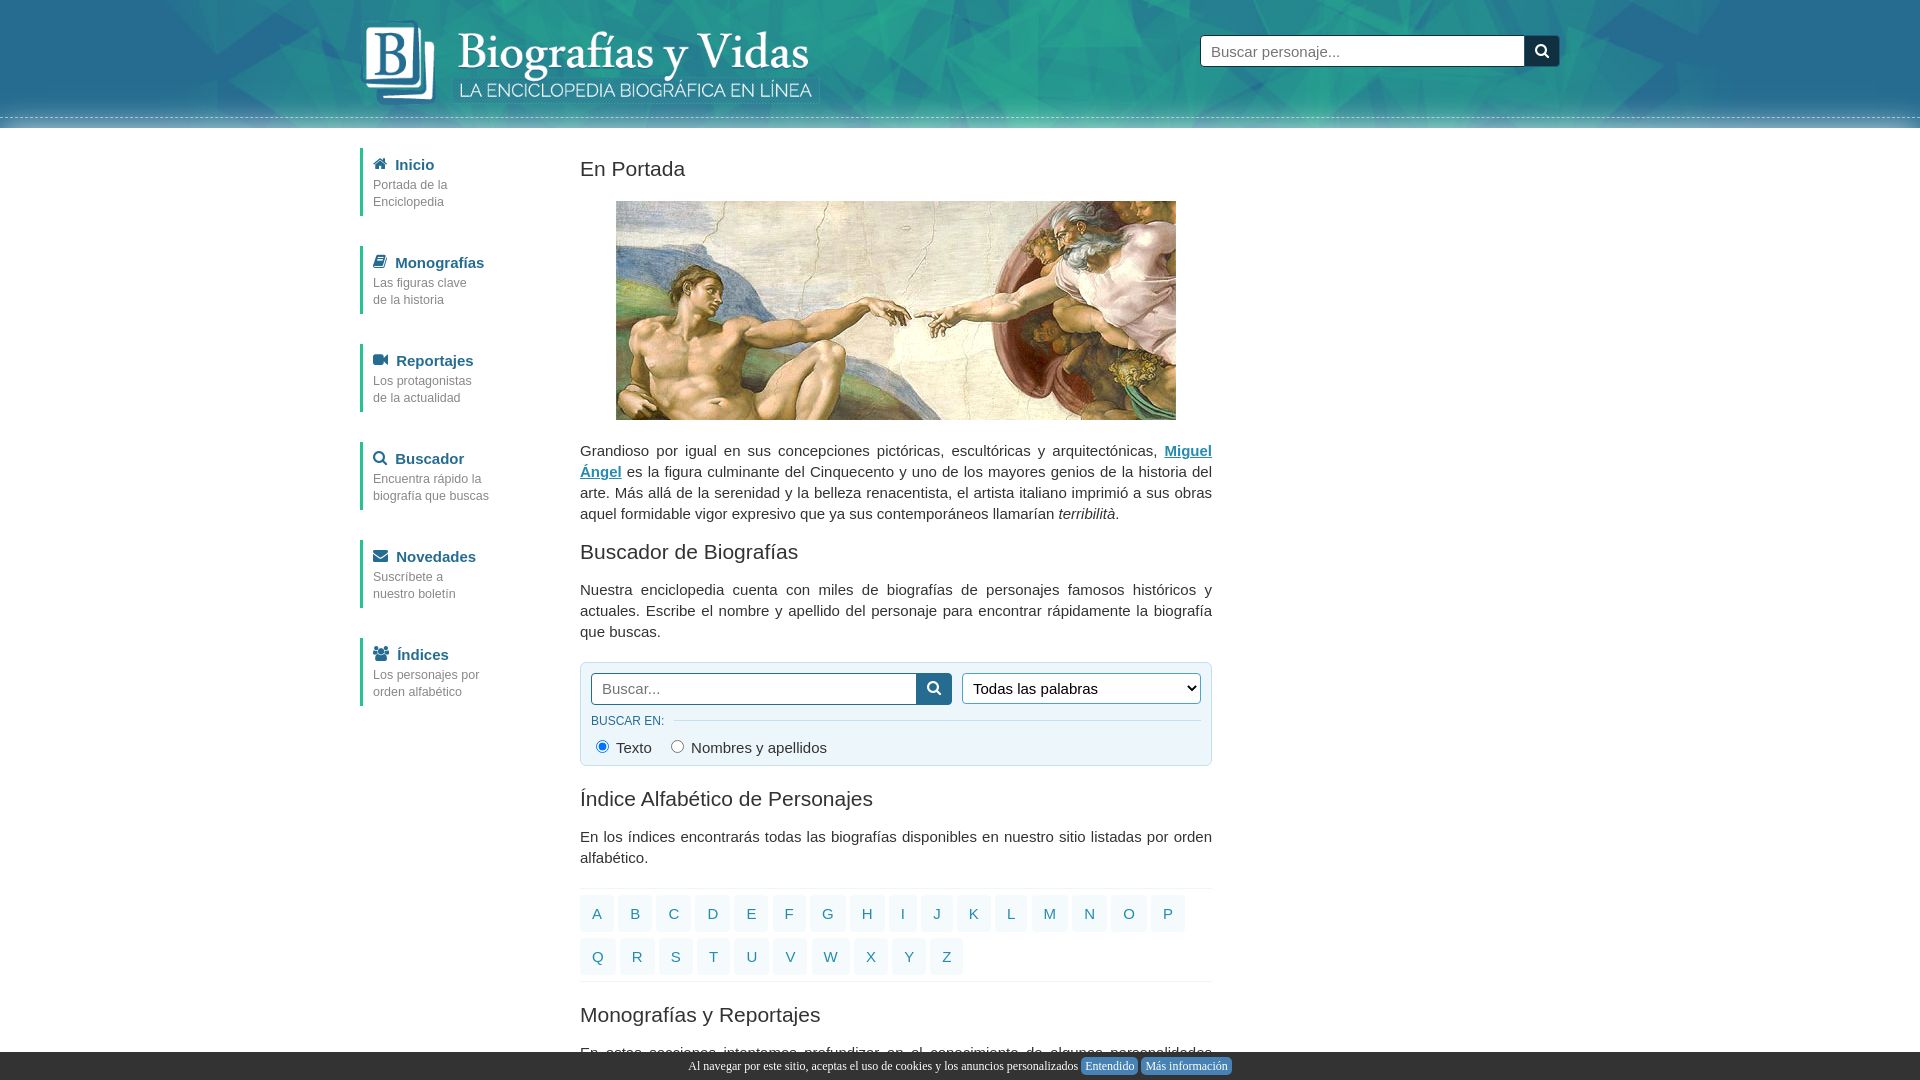 вебсайт biografiasyvidas.com Є   ONLINE